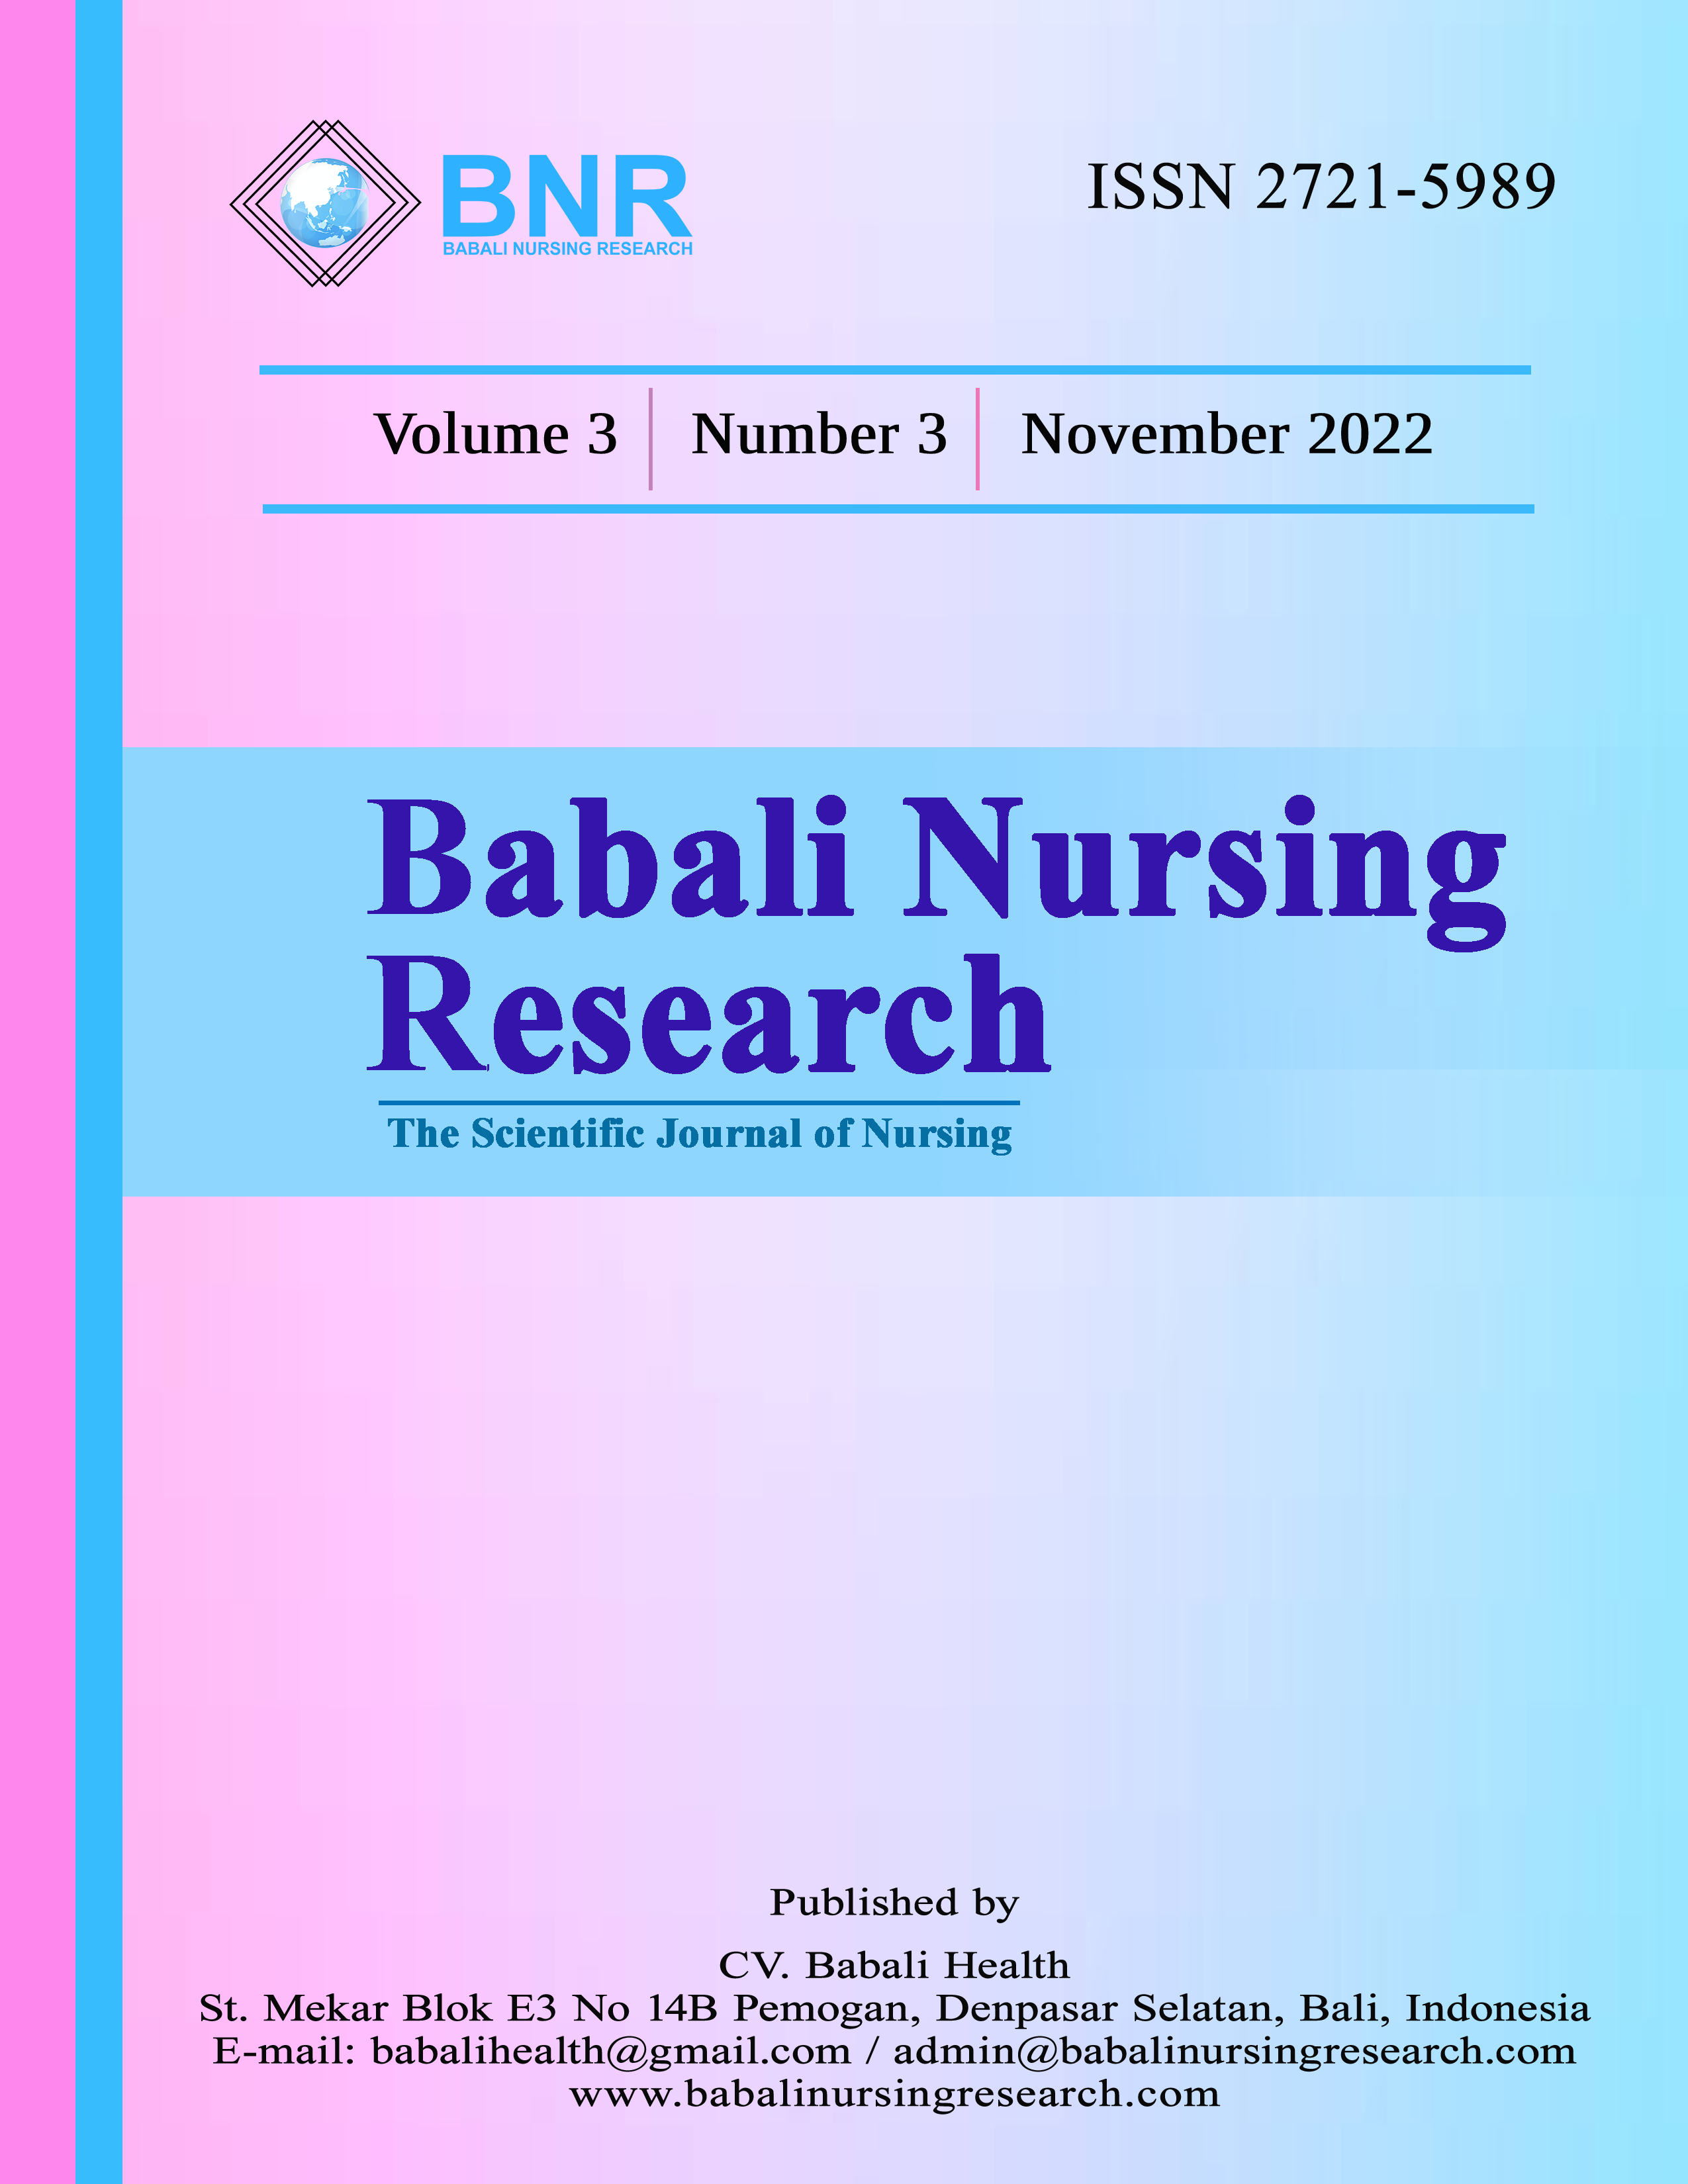 Babali Nursing Research